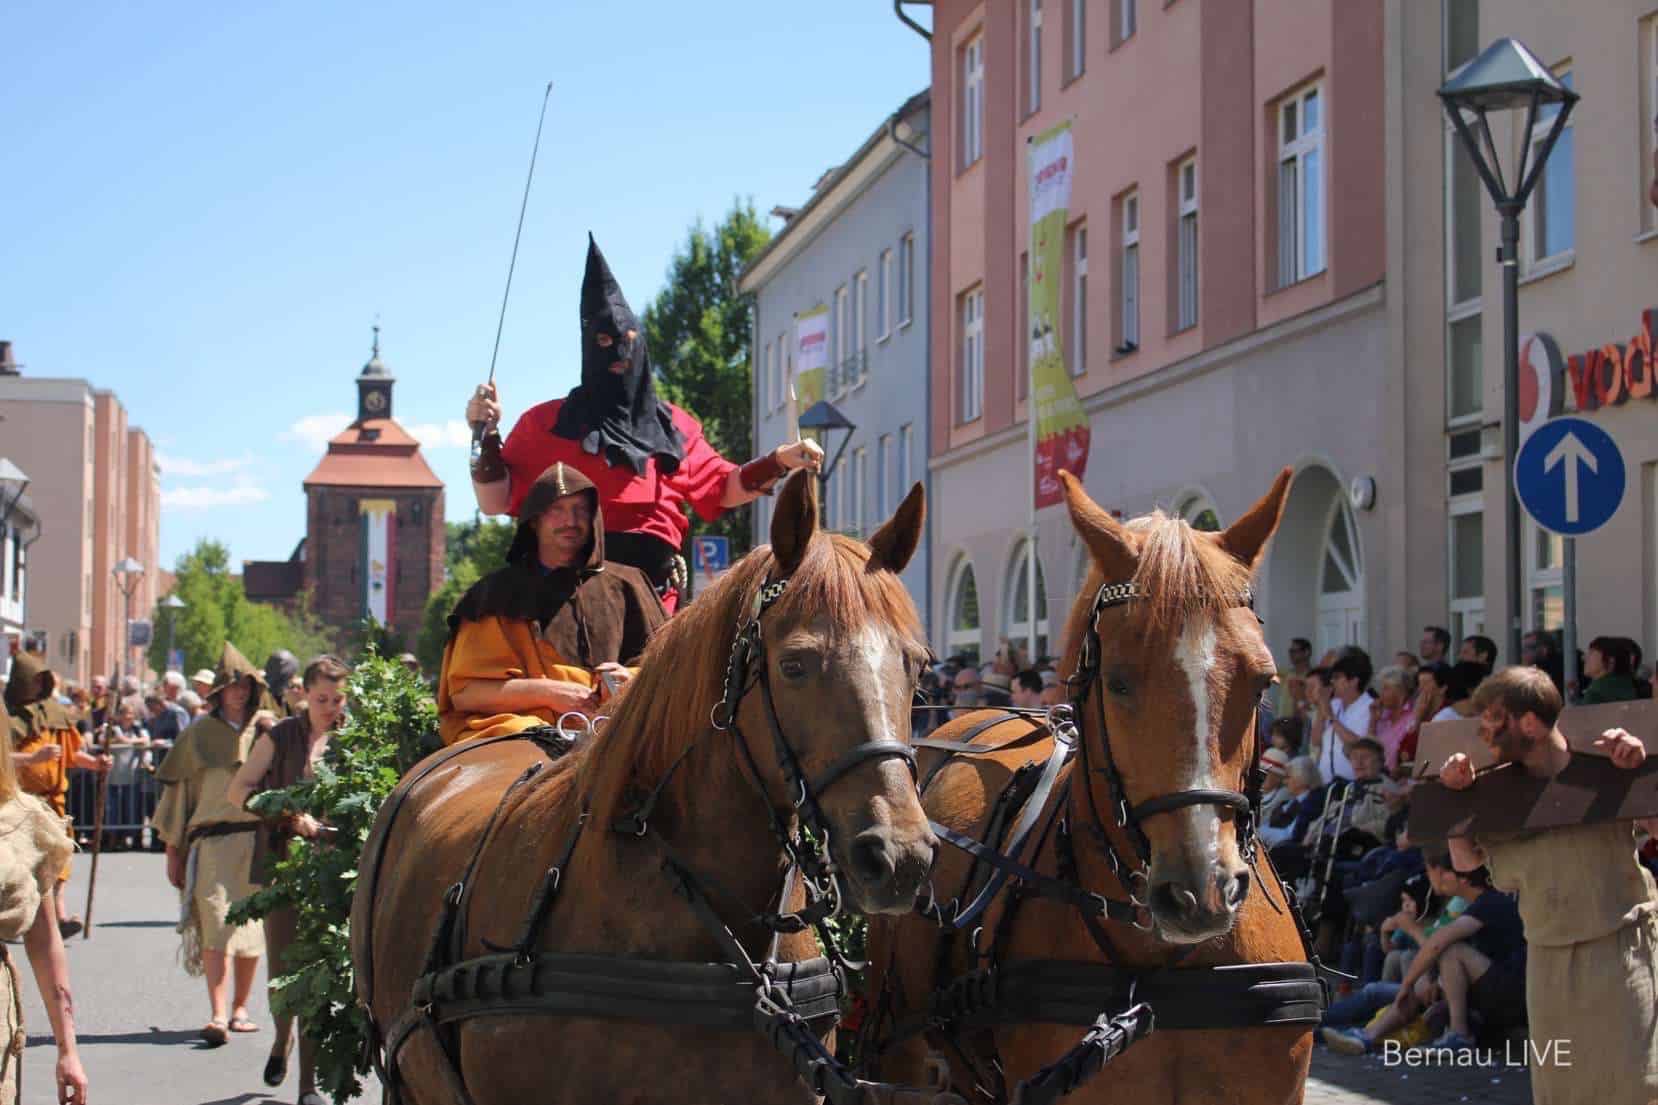 Hussitenfest Bernau: Verleih von Kostümen zum Festumzug